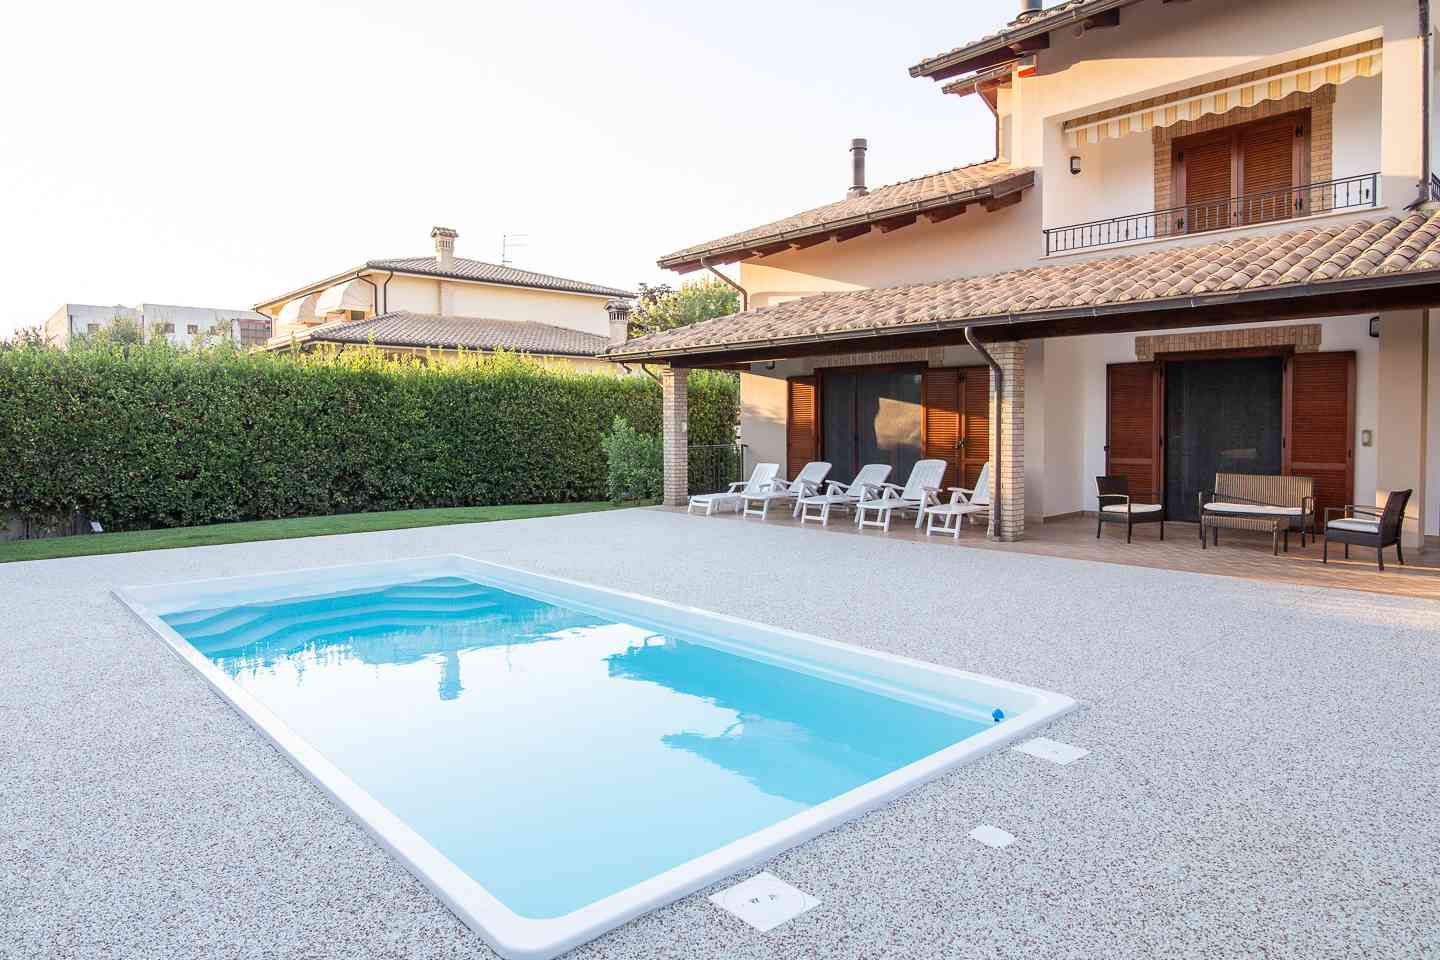 Casa indipendente Casa indipendente in vendita Collecorvino (PE), Villa Pini - Collecorvino - EUR 579.130 420